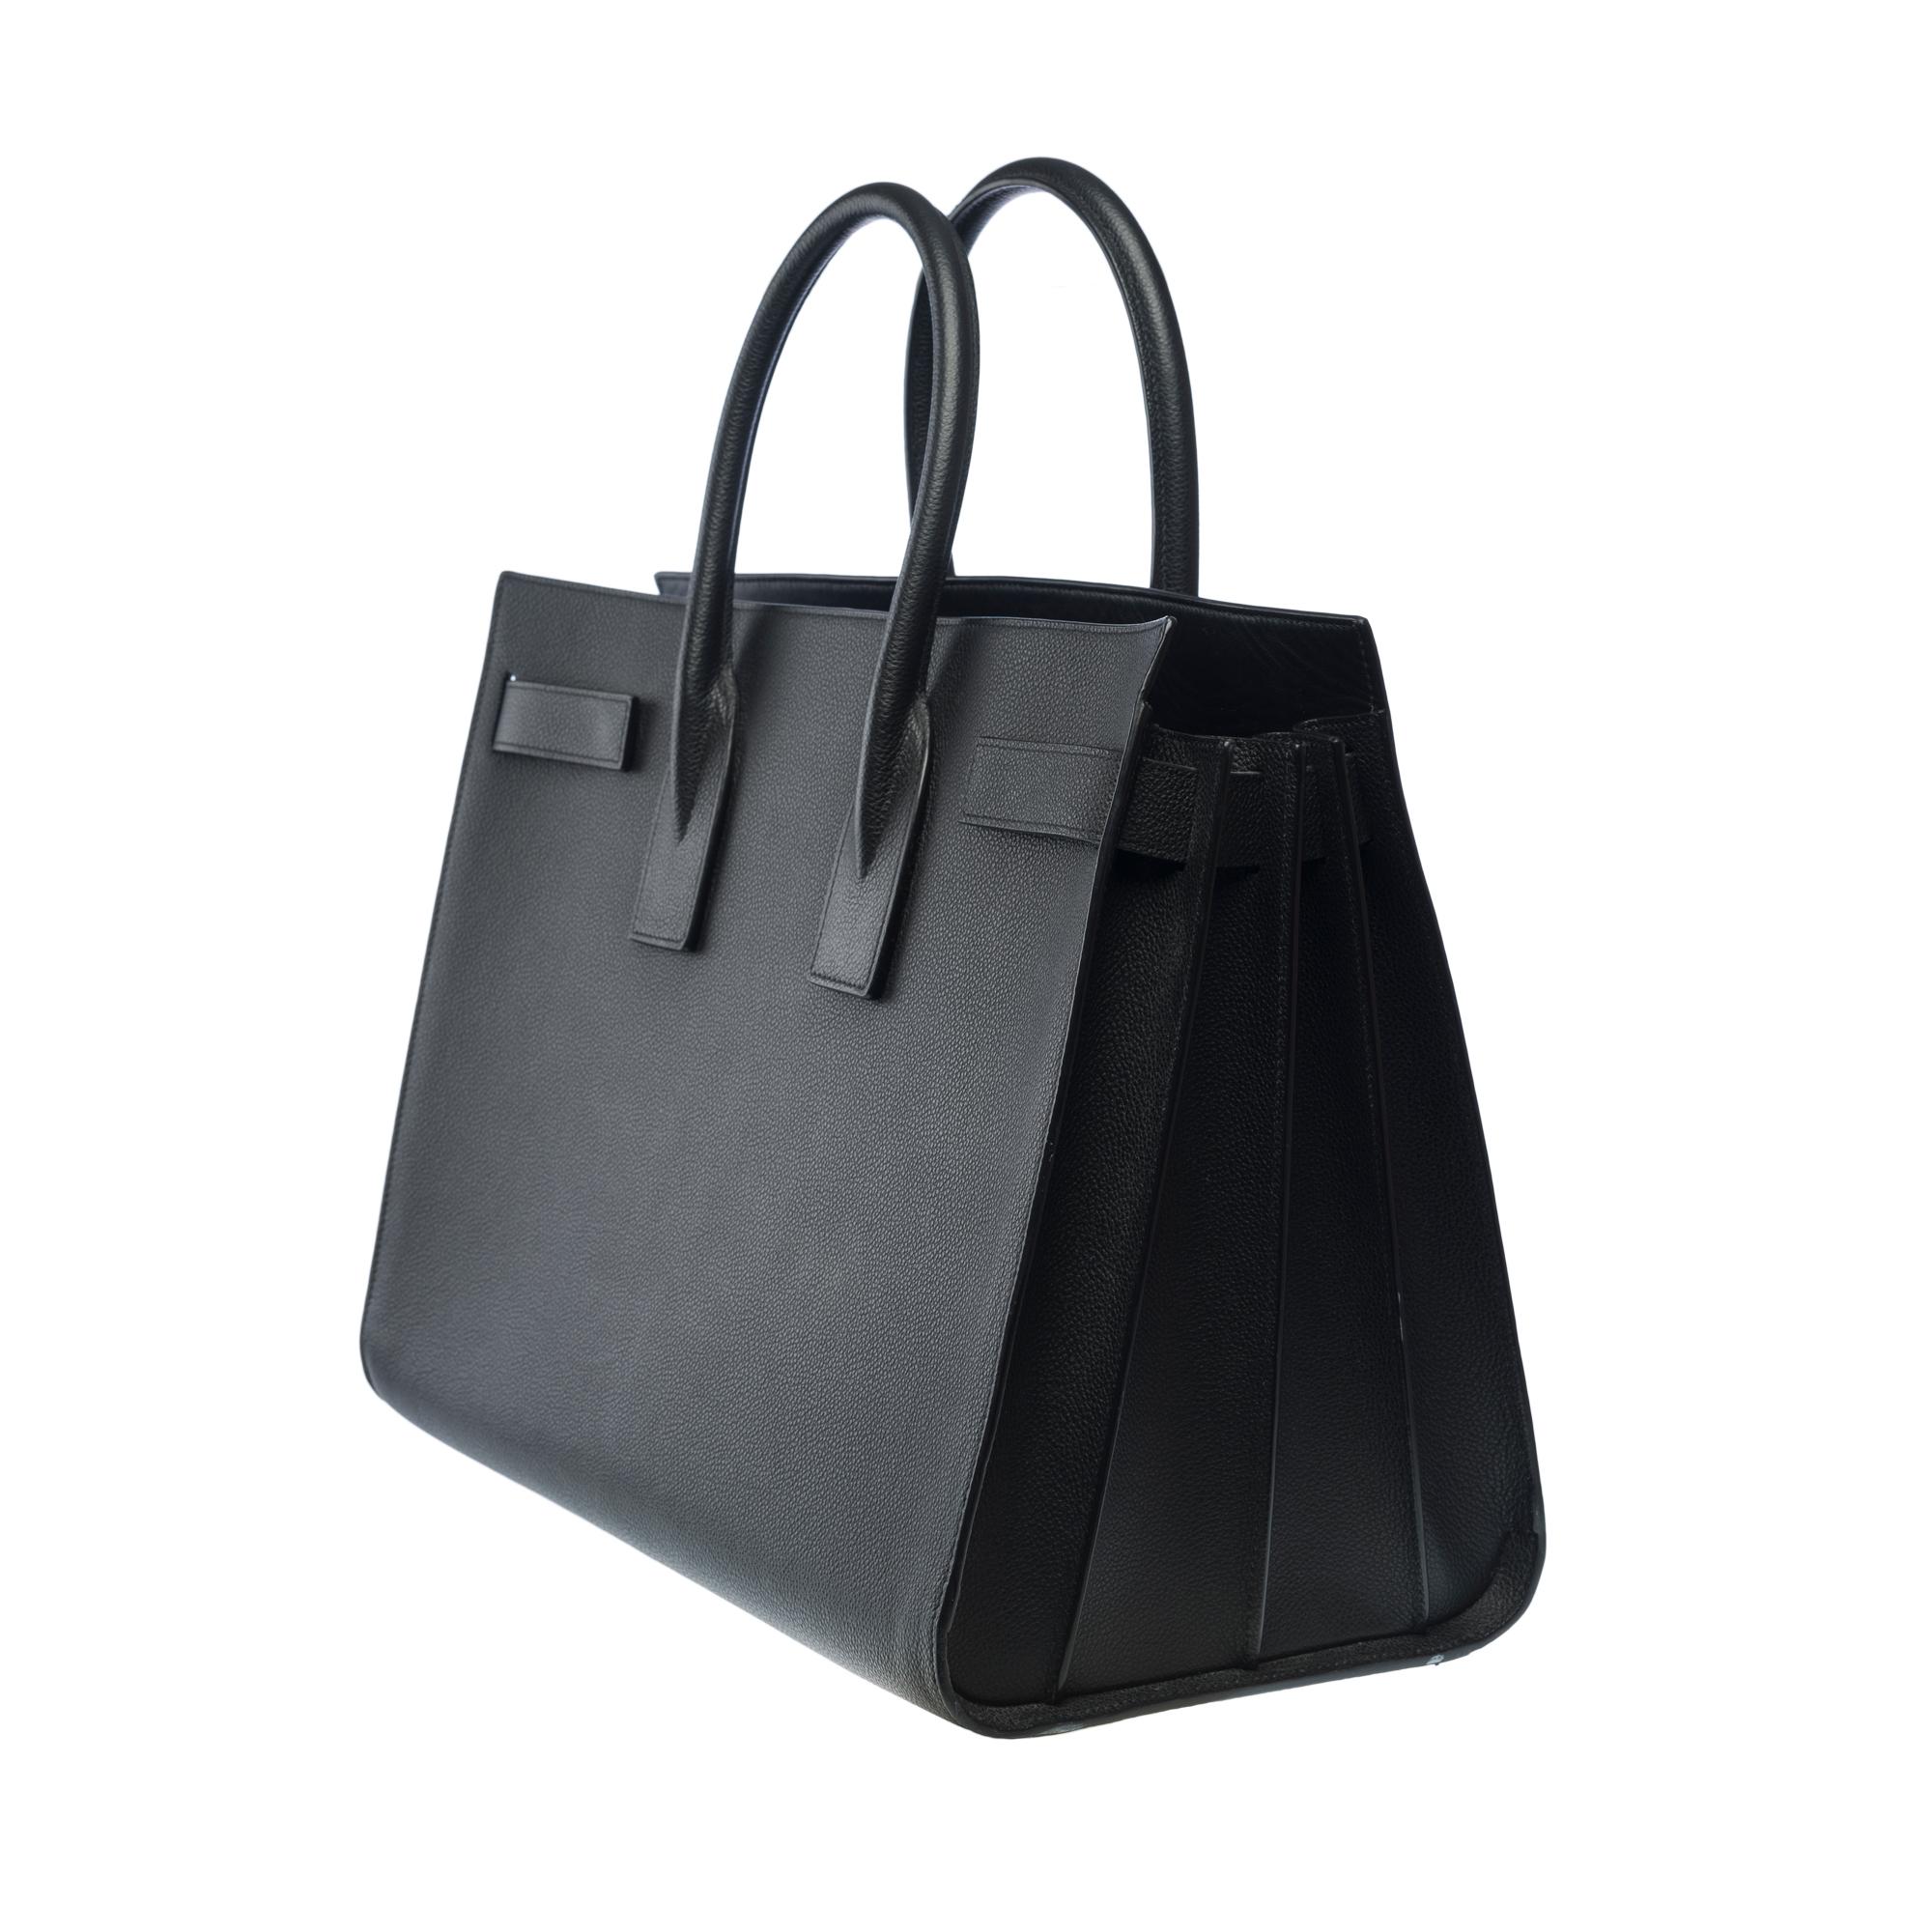 Saint Laurent Sac de Jour Large size handbag strap in black grained leather 1